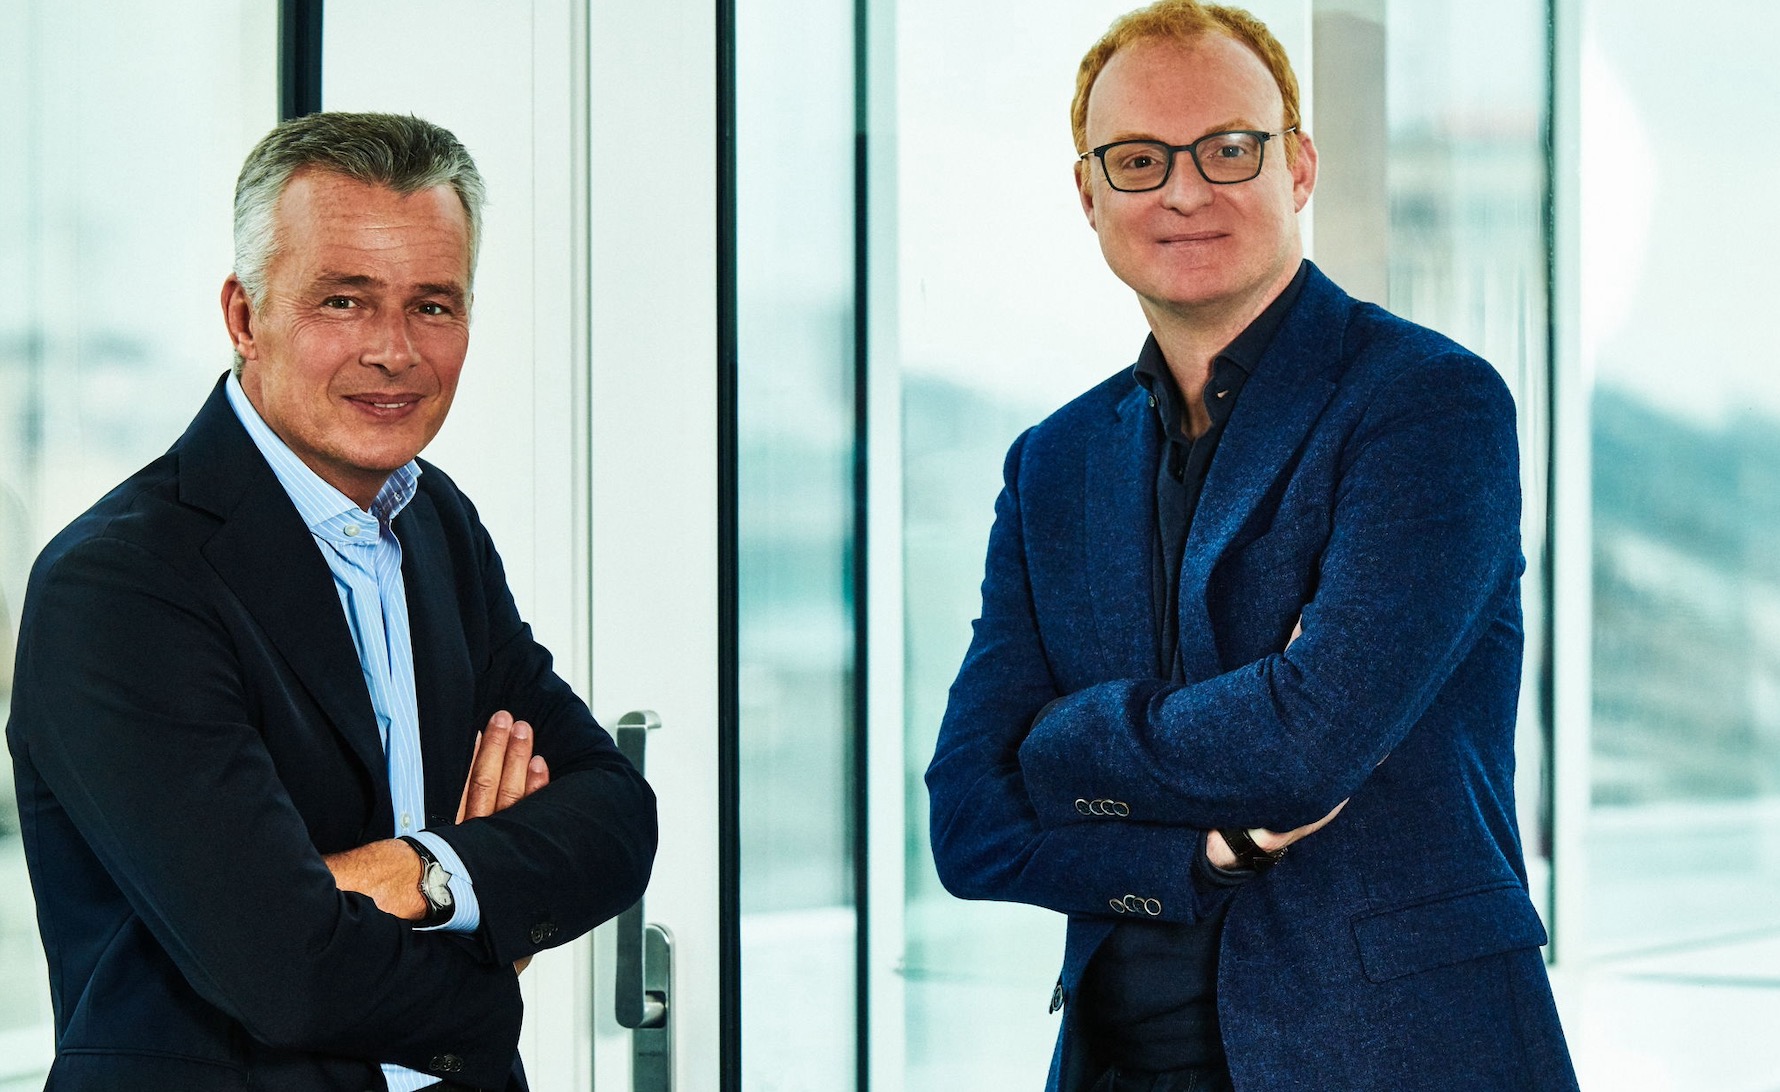   DPG Media + RTL Netherlands : Van Thillo met un milliard sur la table pour réaliser son rêve